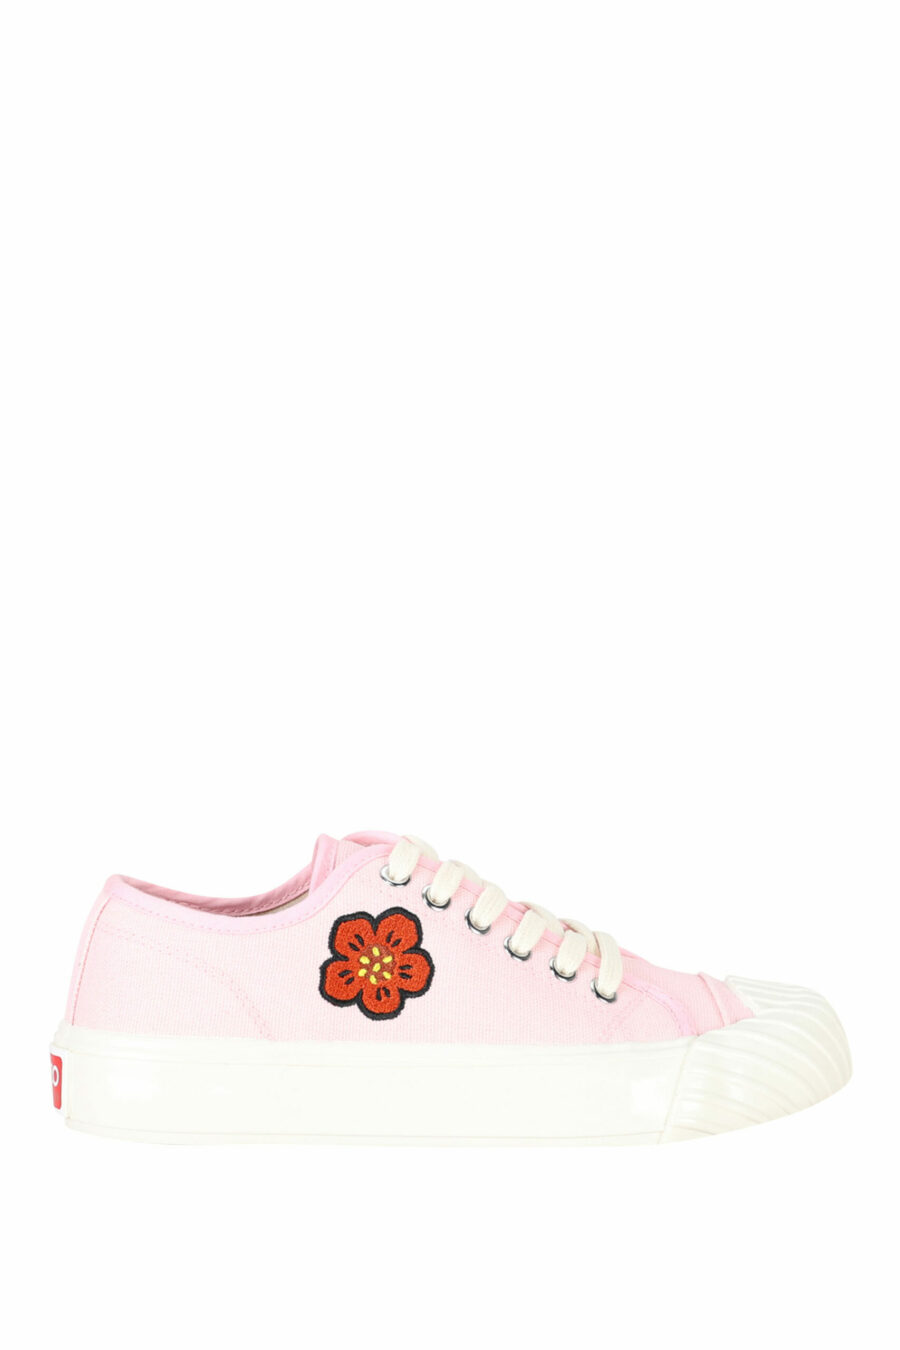 Baskets roses "kenzo school" avec logo "boke flower" - 3612230484559 en écailles